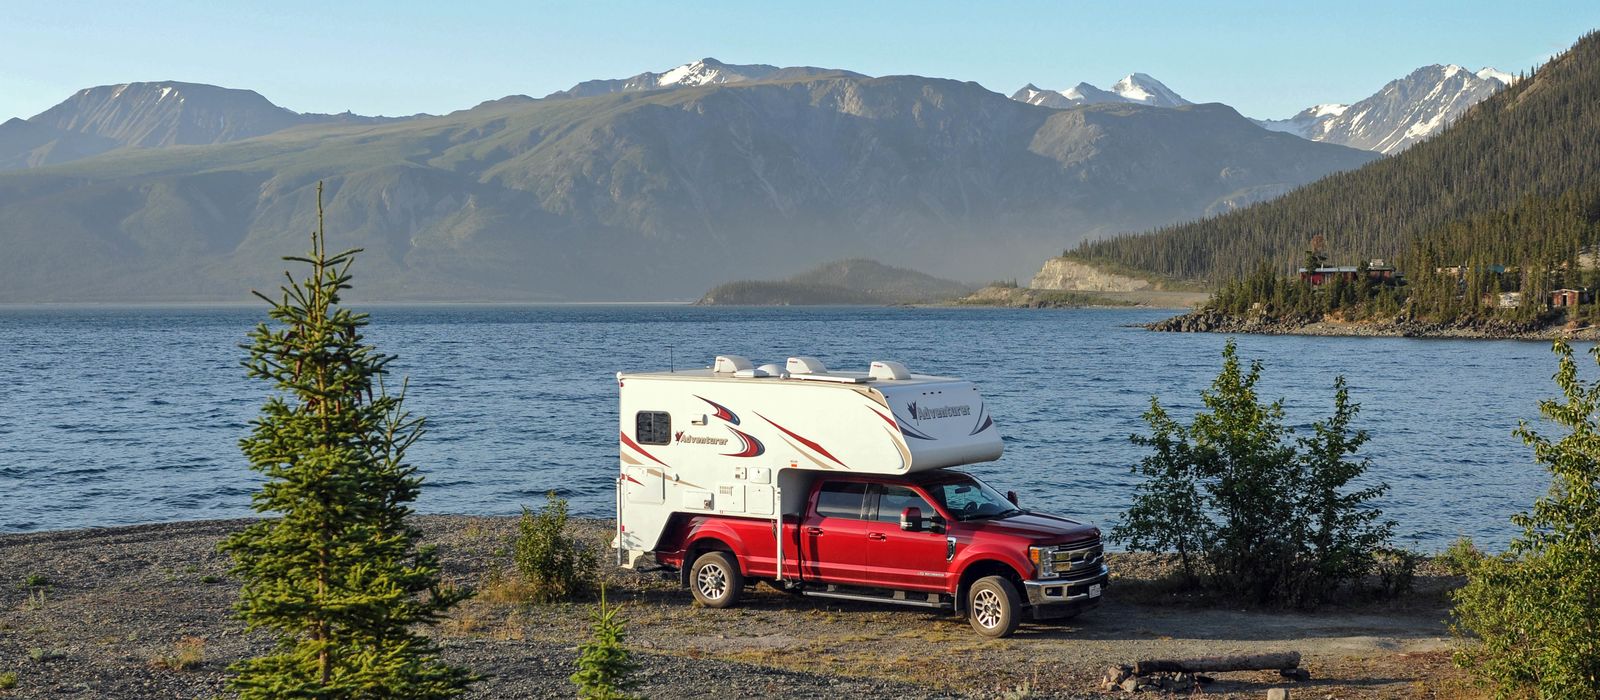 Roadtrip durch den Yukon mit einem Fraserway Truck Camper